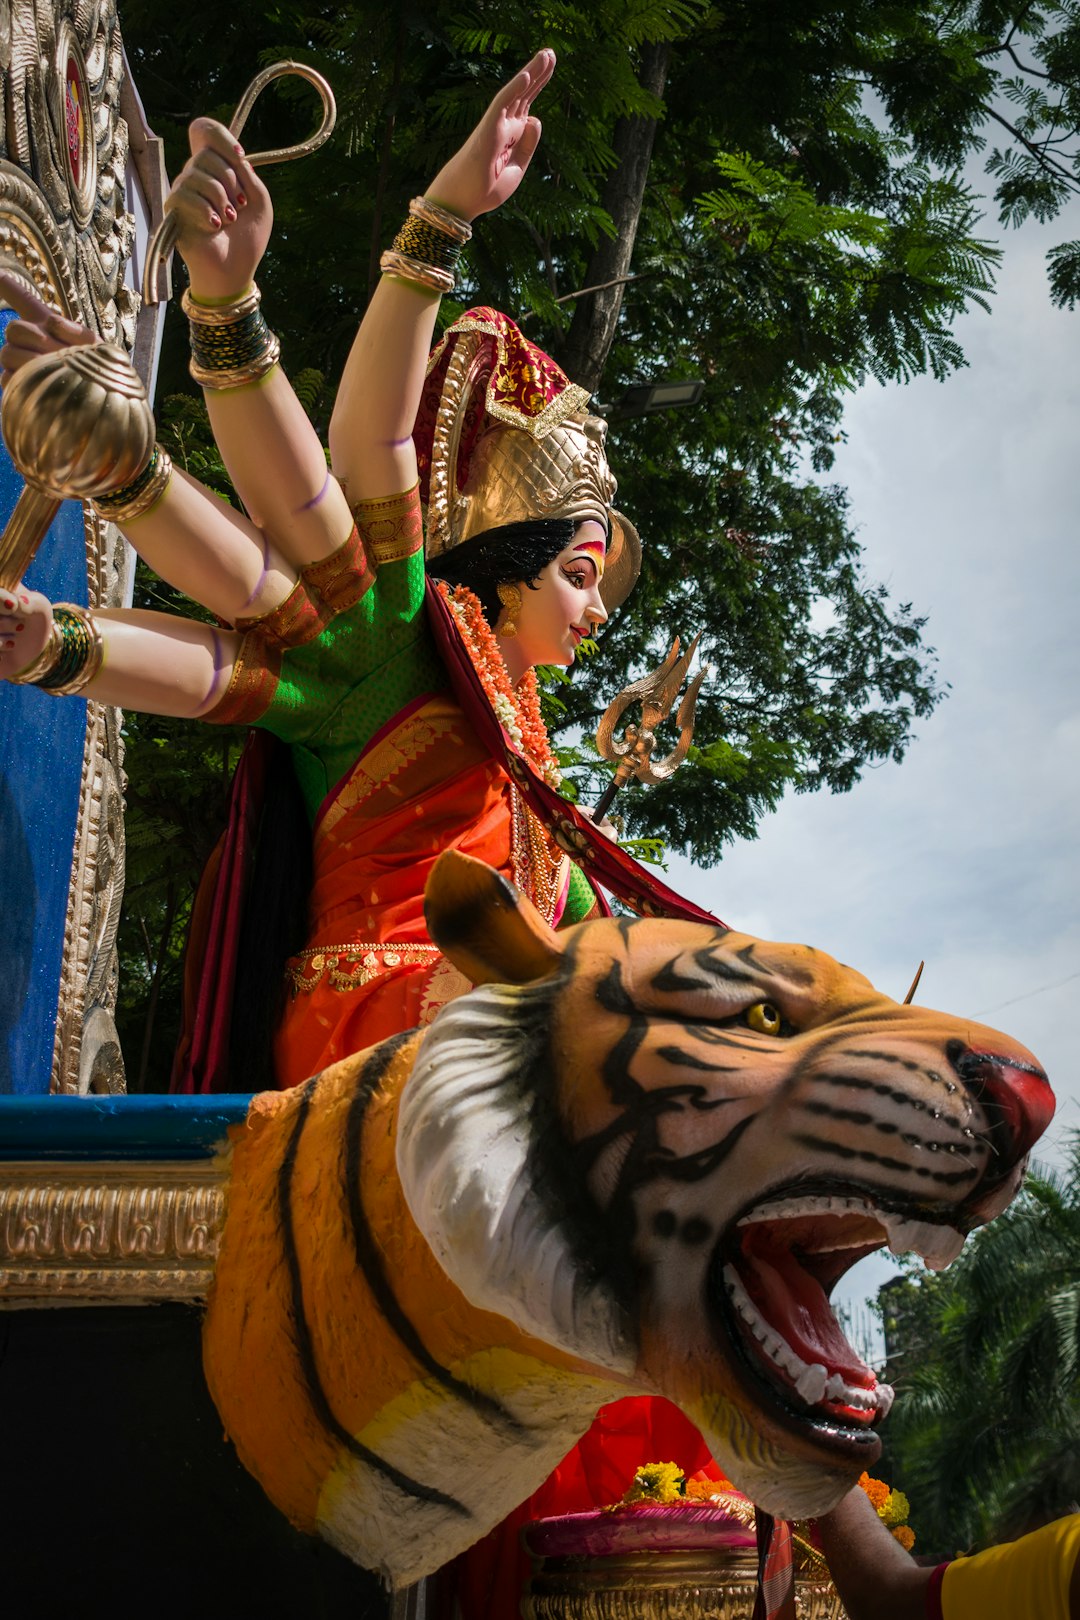 A beautiful idol of Maa Durga at a workshop in Mumbai during Navratri 2019